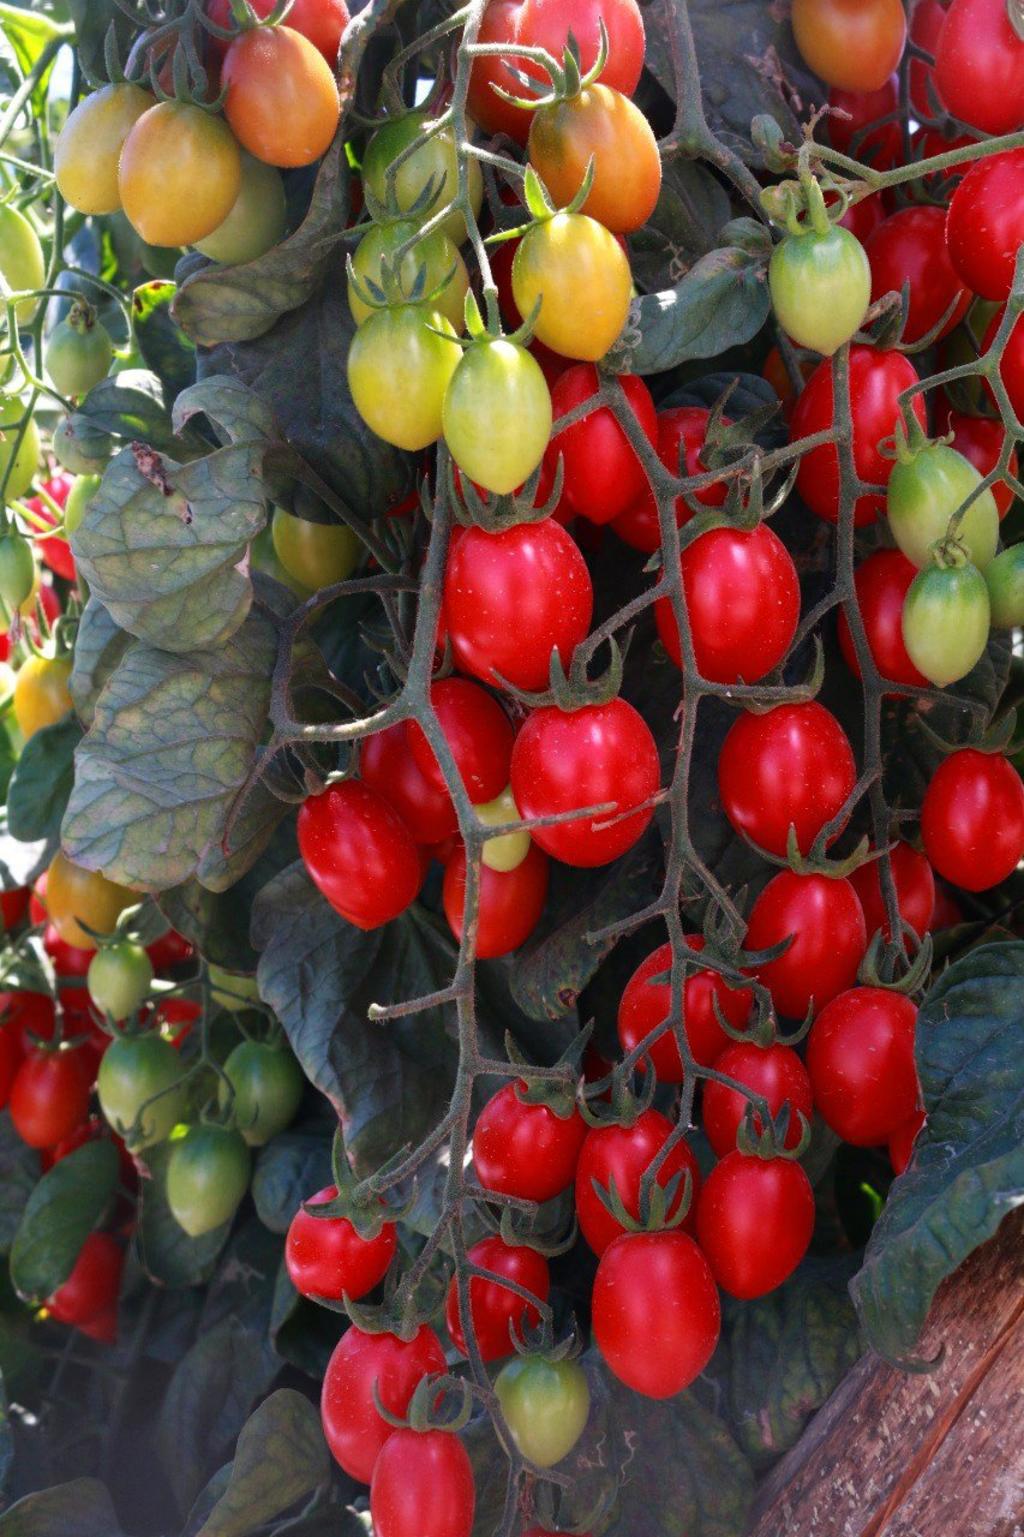 El gobierno mexicano debe intensificar las negociaciones para retirar el arancel de 17.5 por ciento a las exportaciones de tomate, aun cuando este esquema de comercio está fuera del Tratado de Libre Comercio entre México y Estados Unidos (T-MEC). (ARCHIVO)